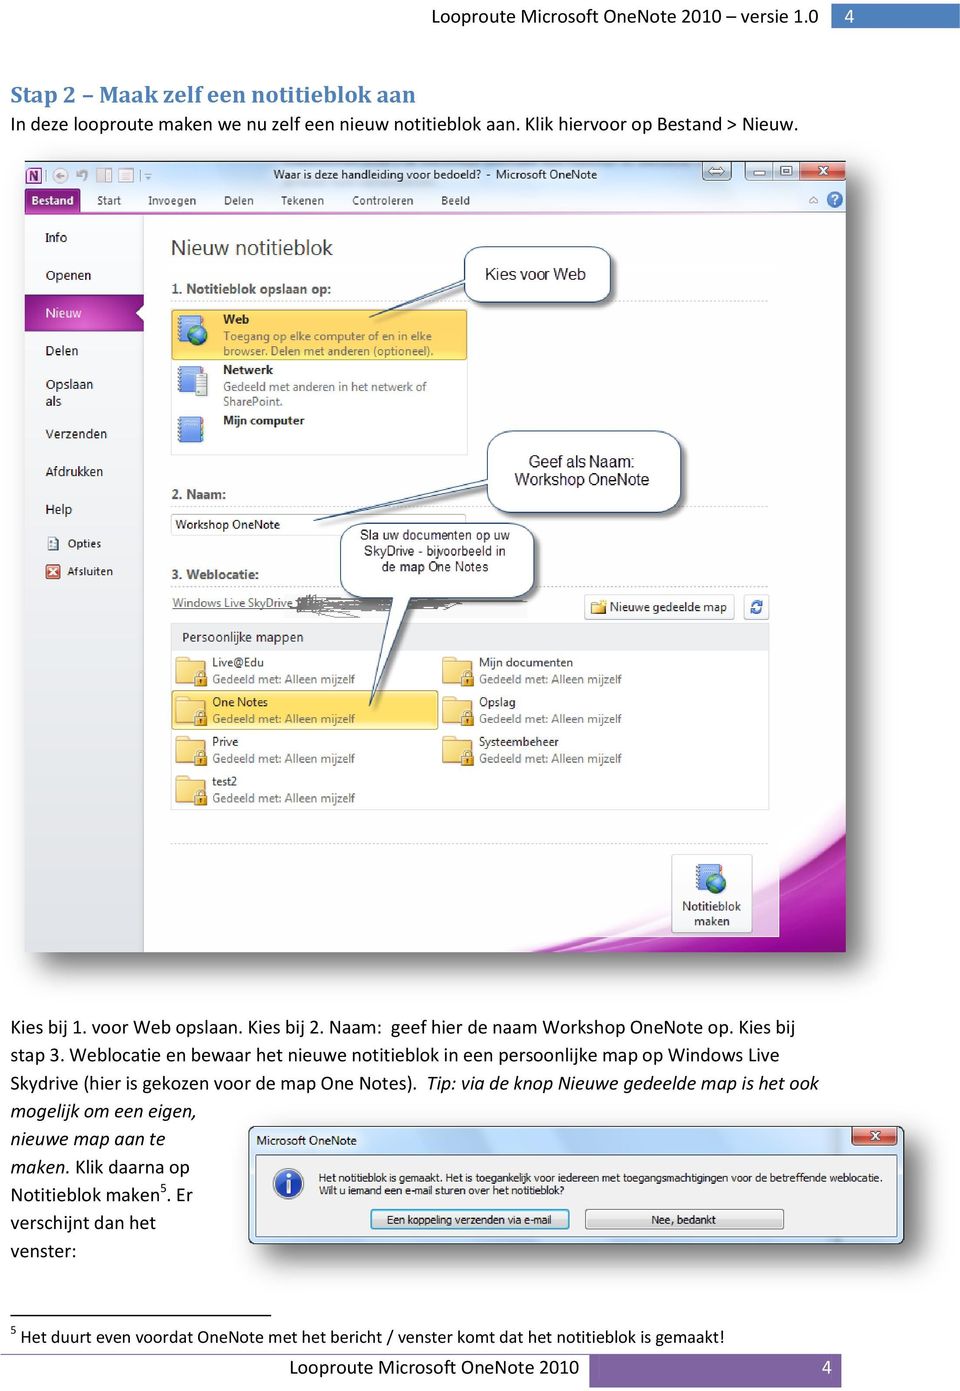 Weblocatie en bewaar het nieuwe notitieblok in een persoonlijke map op Windows Live Skydrive (hier is gekozen voor de map One Notes).